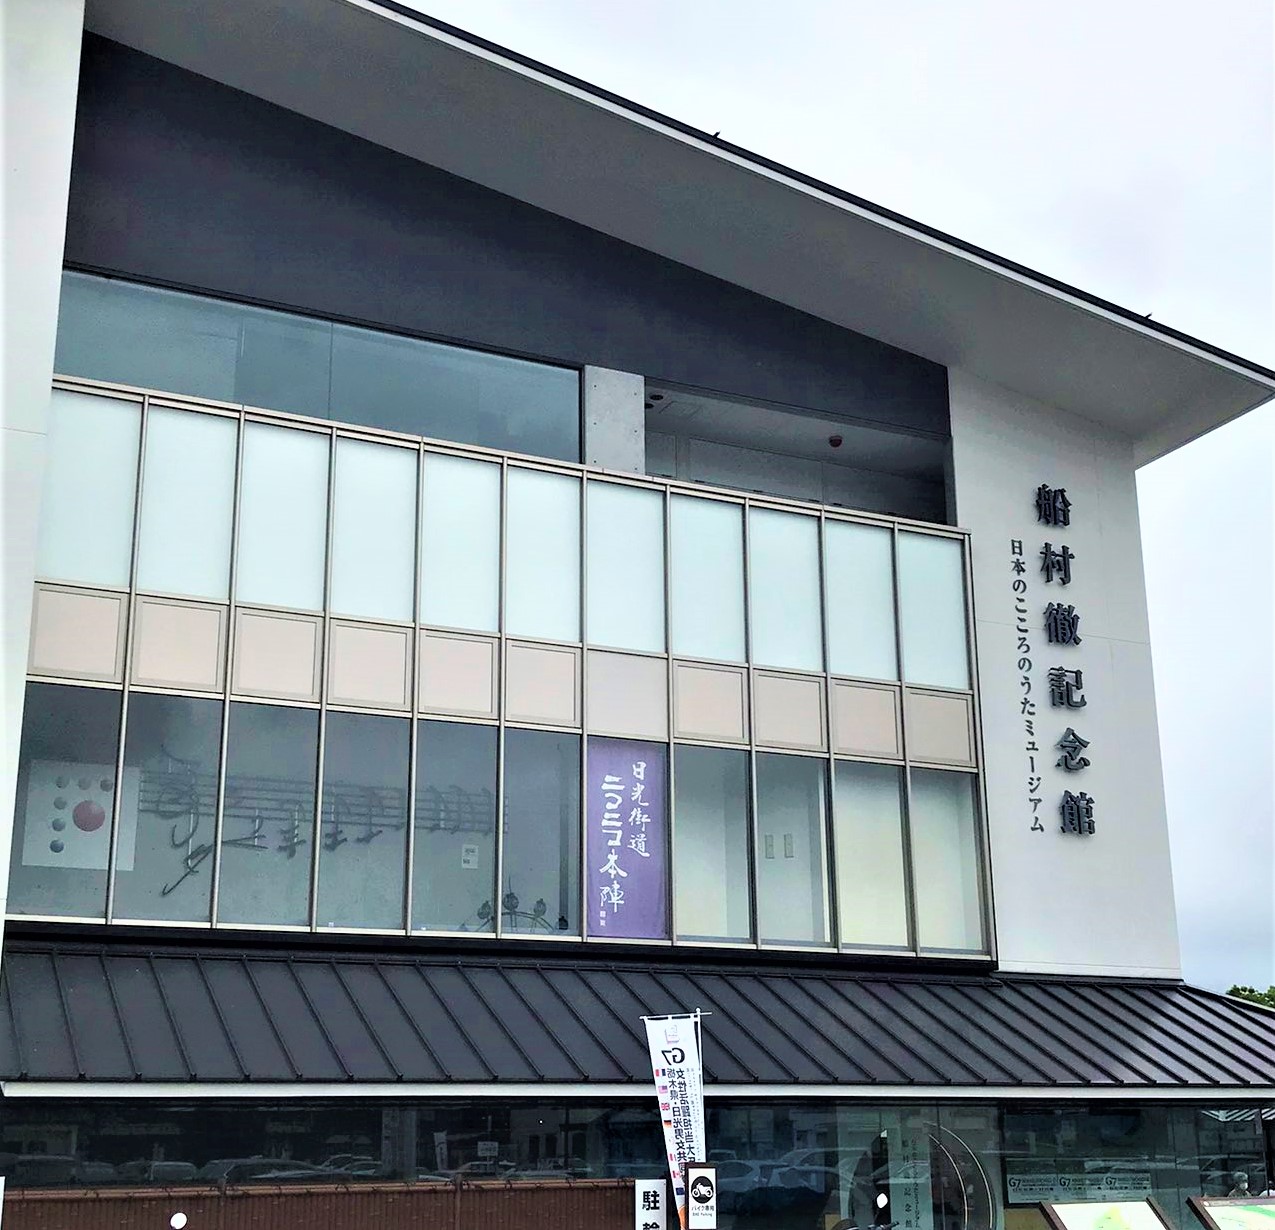 演歌巡礼の旅・約束の場所『日本のこころのうたミュージアム・船村徹記念館』へ。